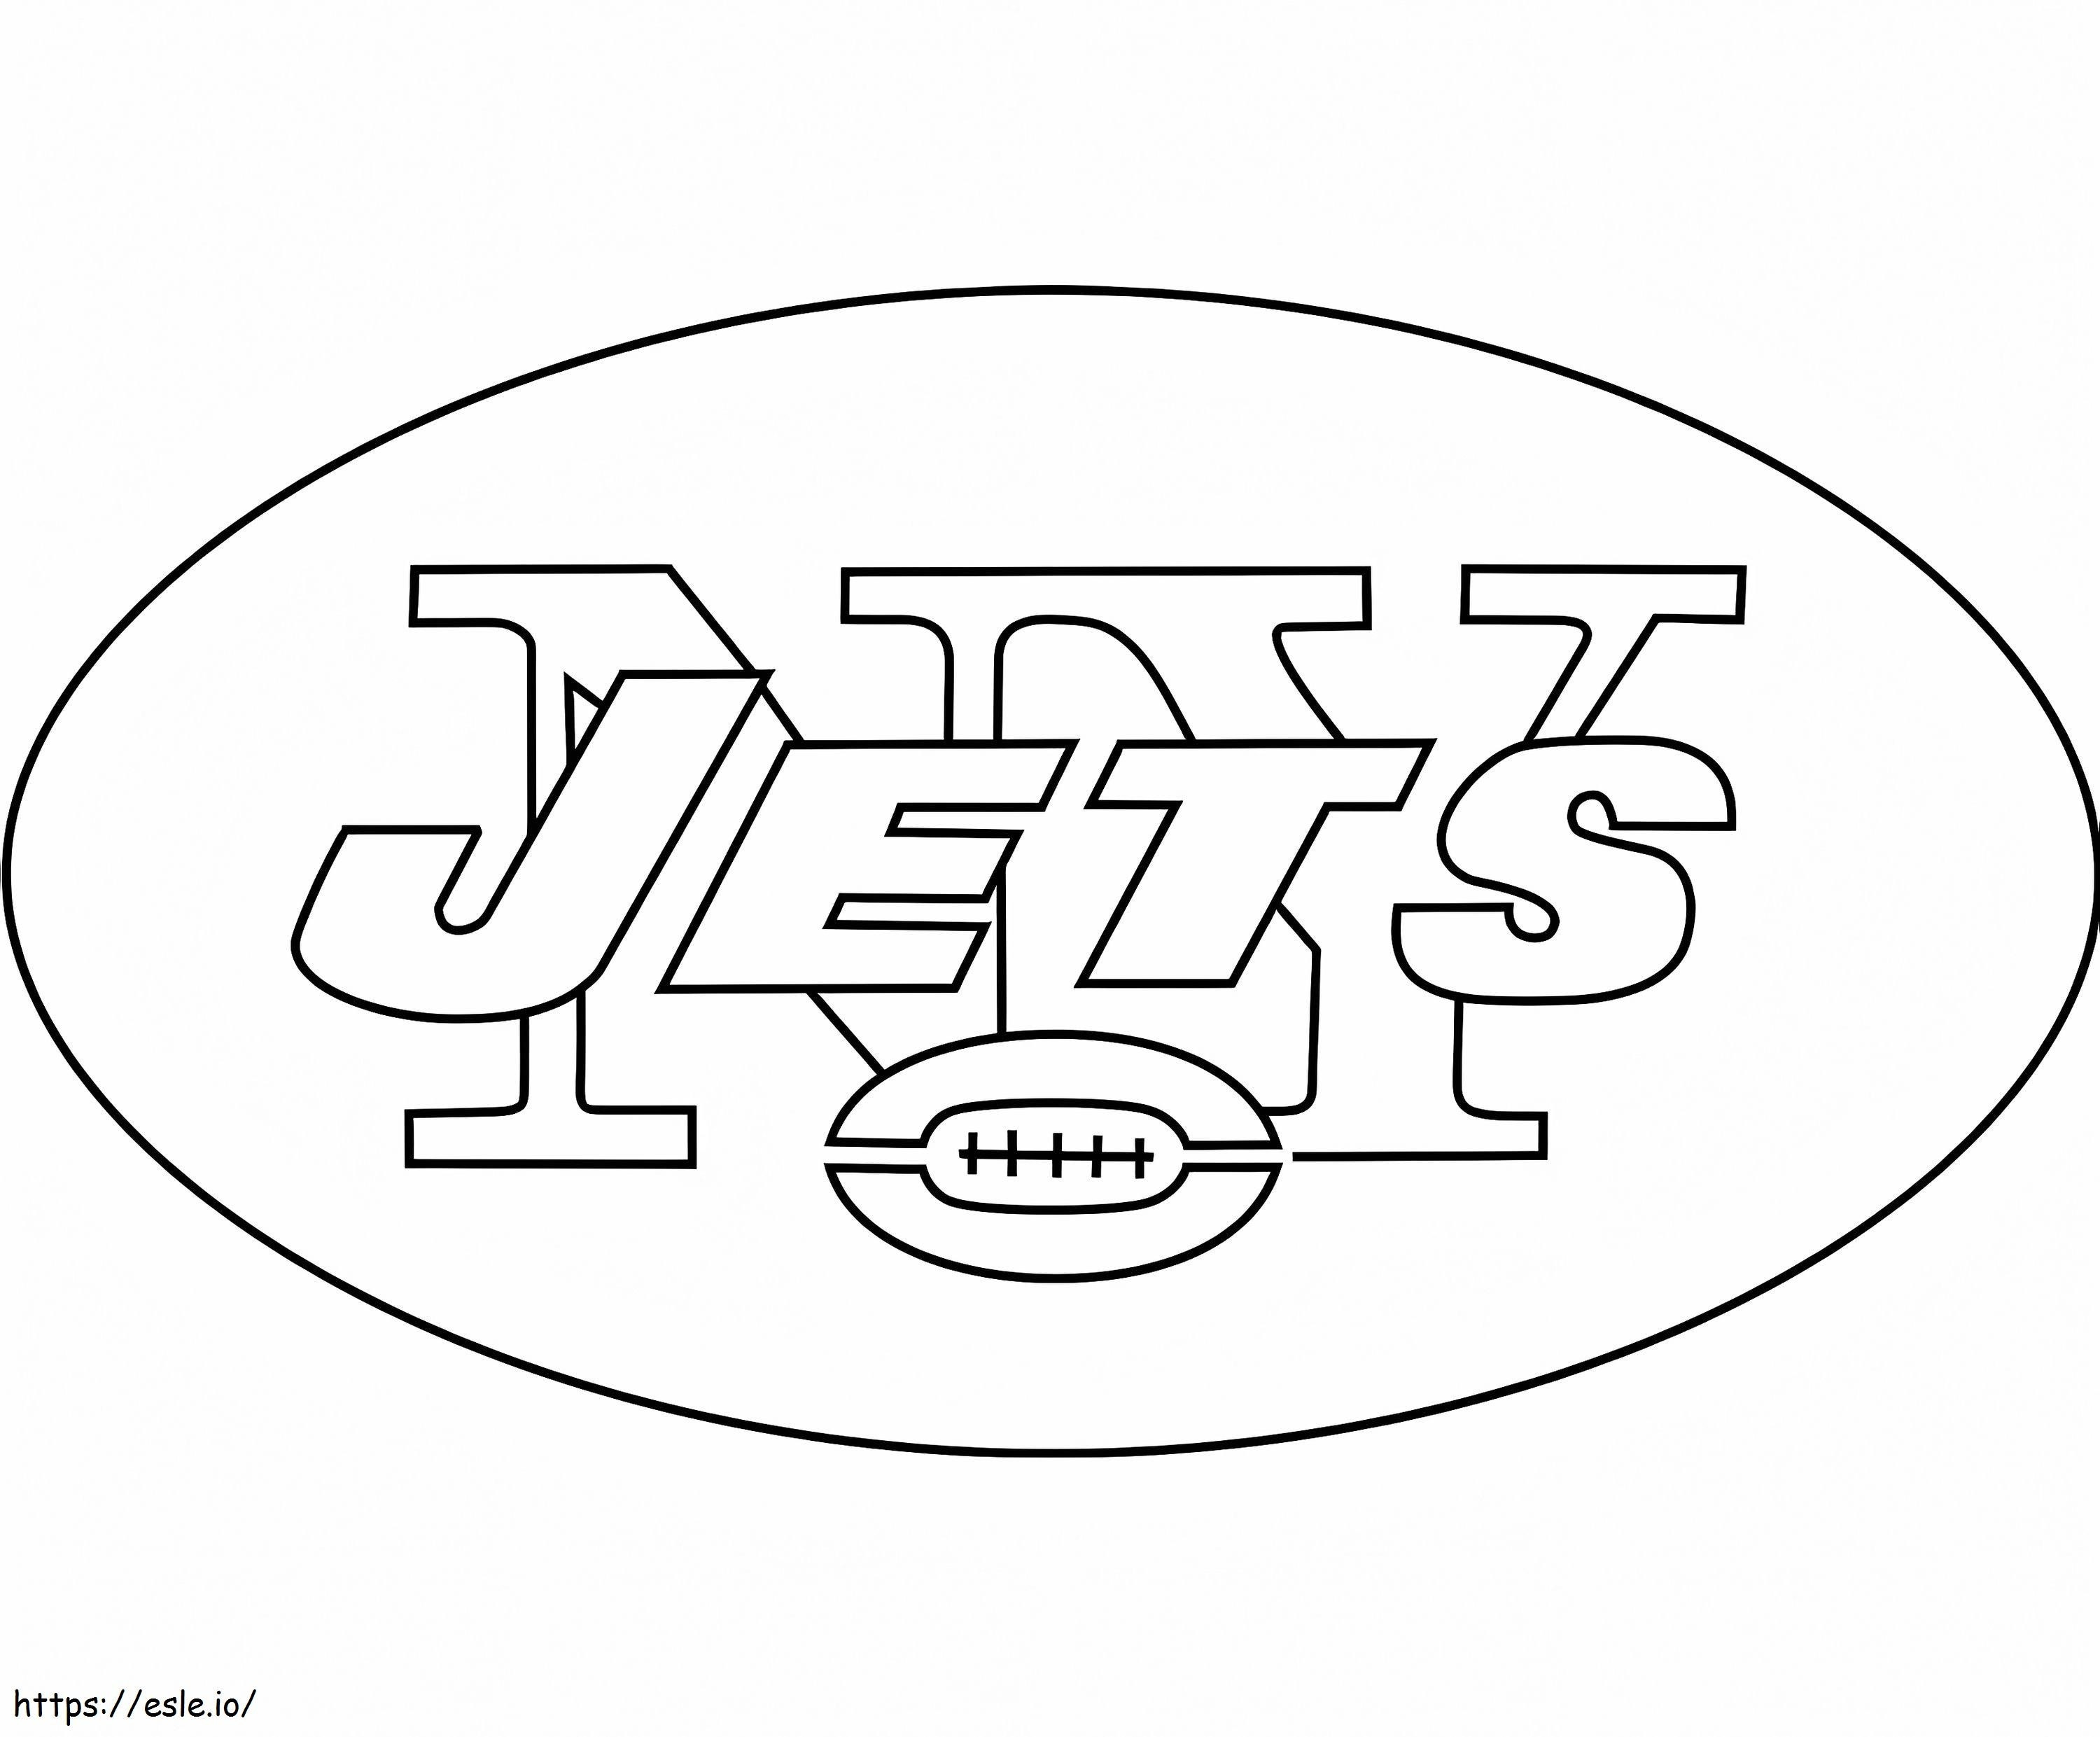 Logo dei New York Jets da colorare